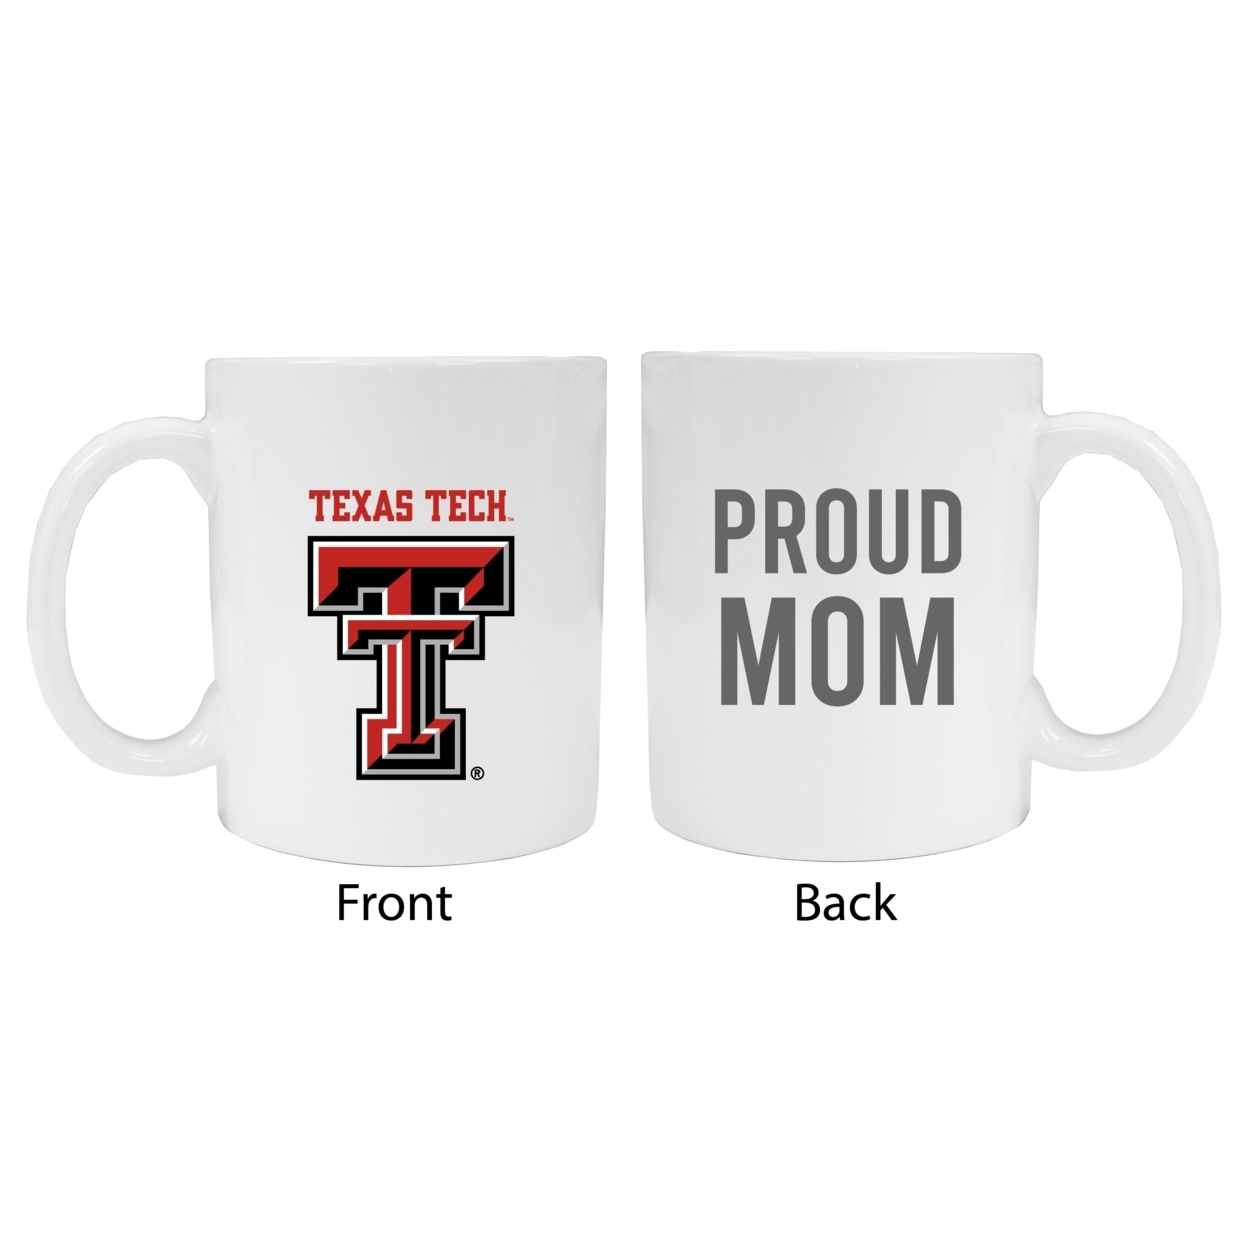 Texas Tech Red Raiders Proud Mom Ceramic Coffee Mug - White